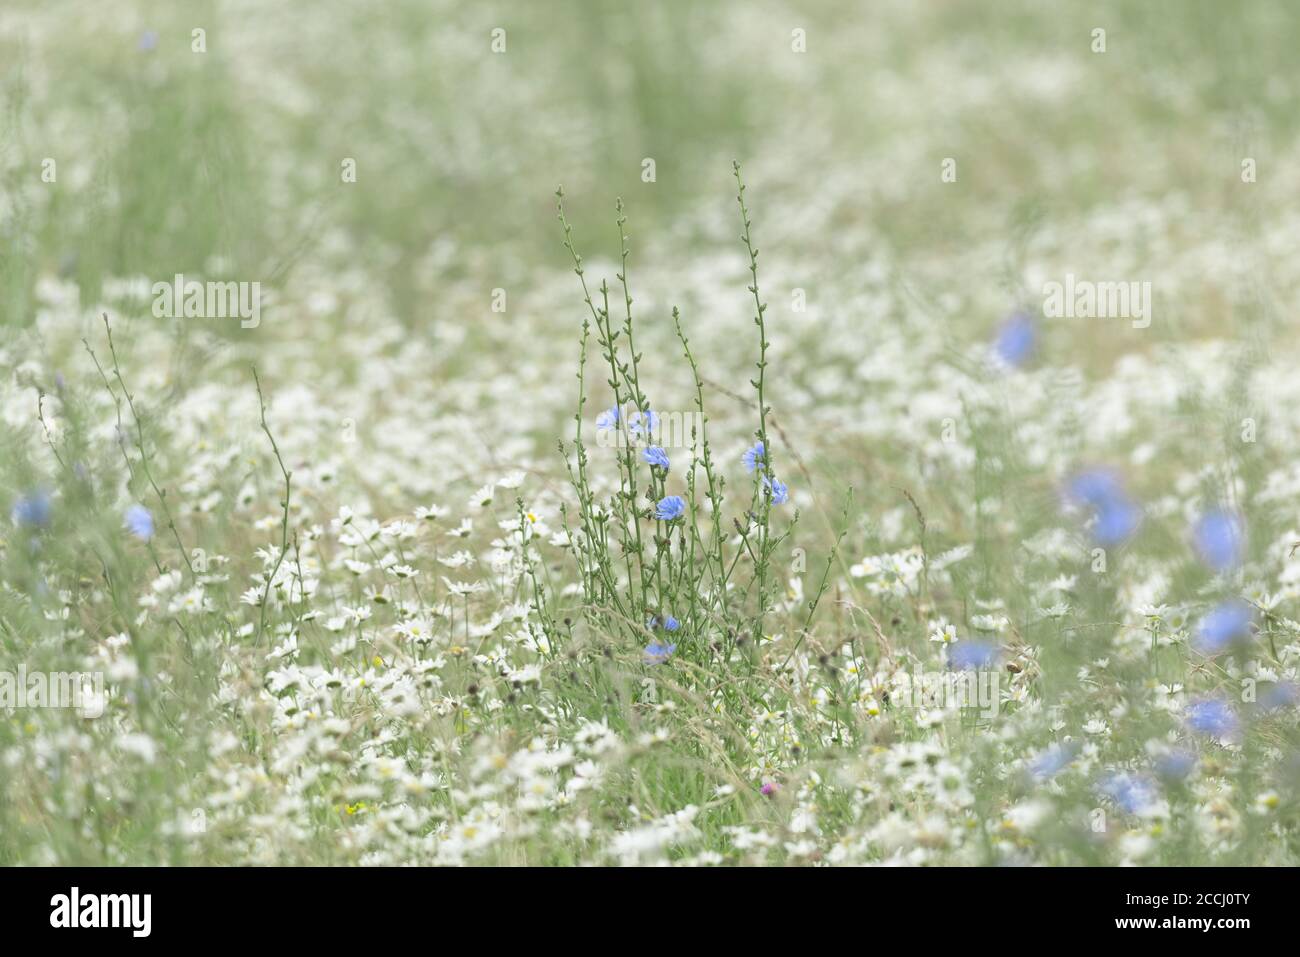 2 - riesige Menge von vielen wilden weißen Gänseblümchen Teppich der Wiesenboden, und ein Fleck von schlanken Zichorien blau blühenden Pflanzen steigen über ihnen. Stockfoto